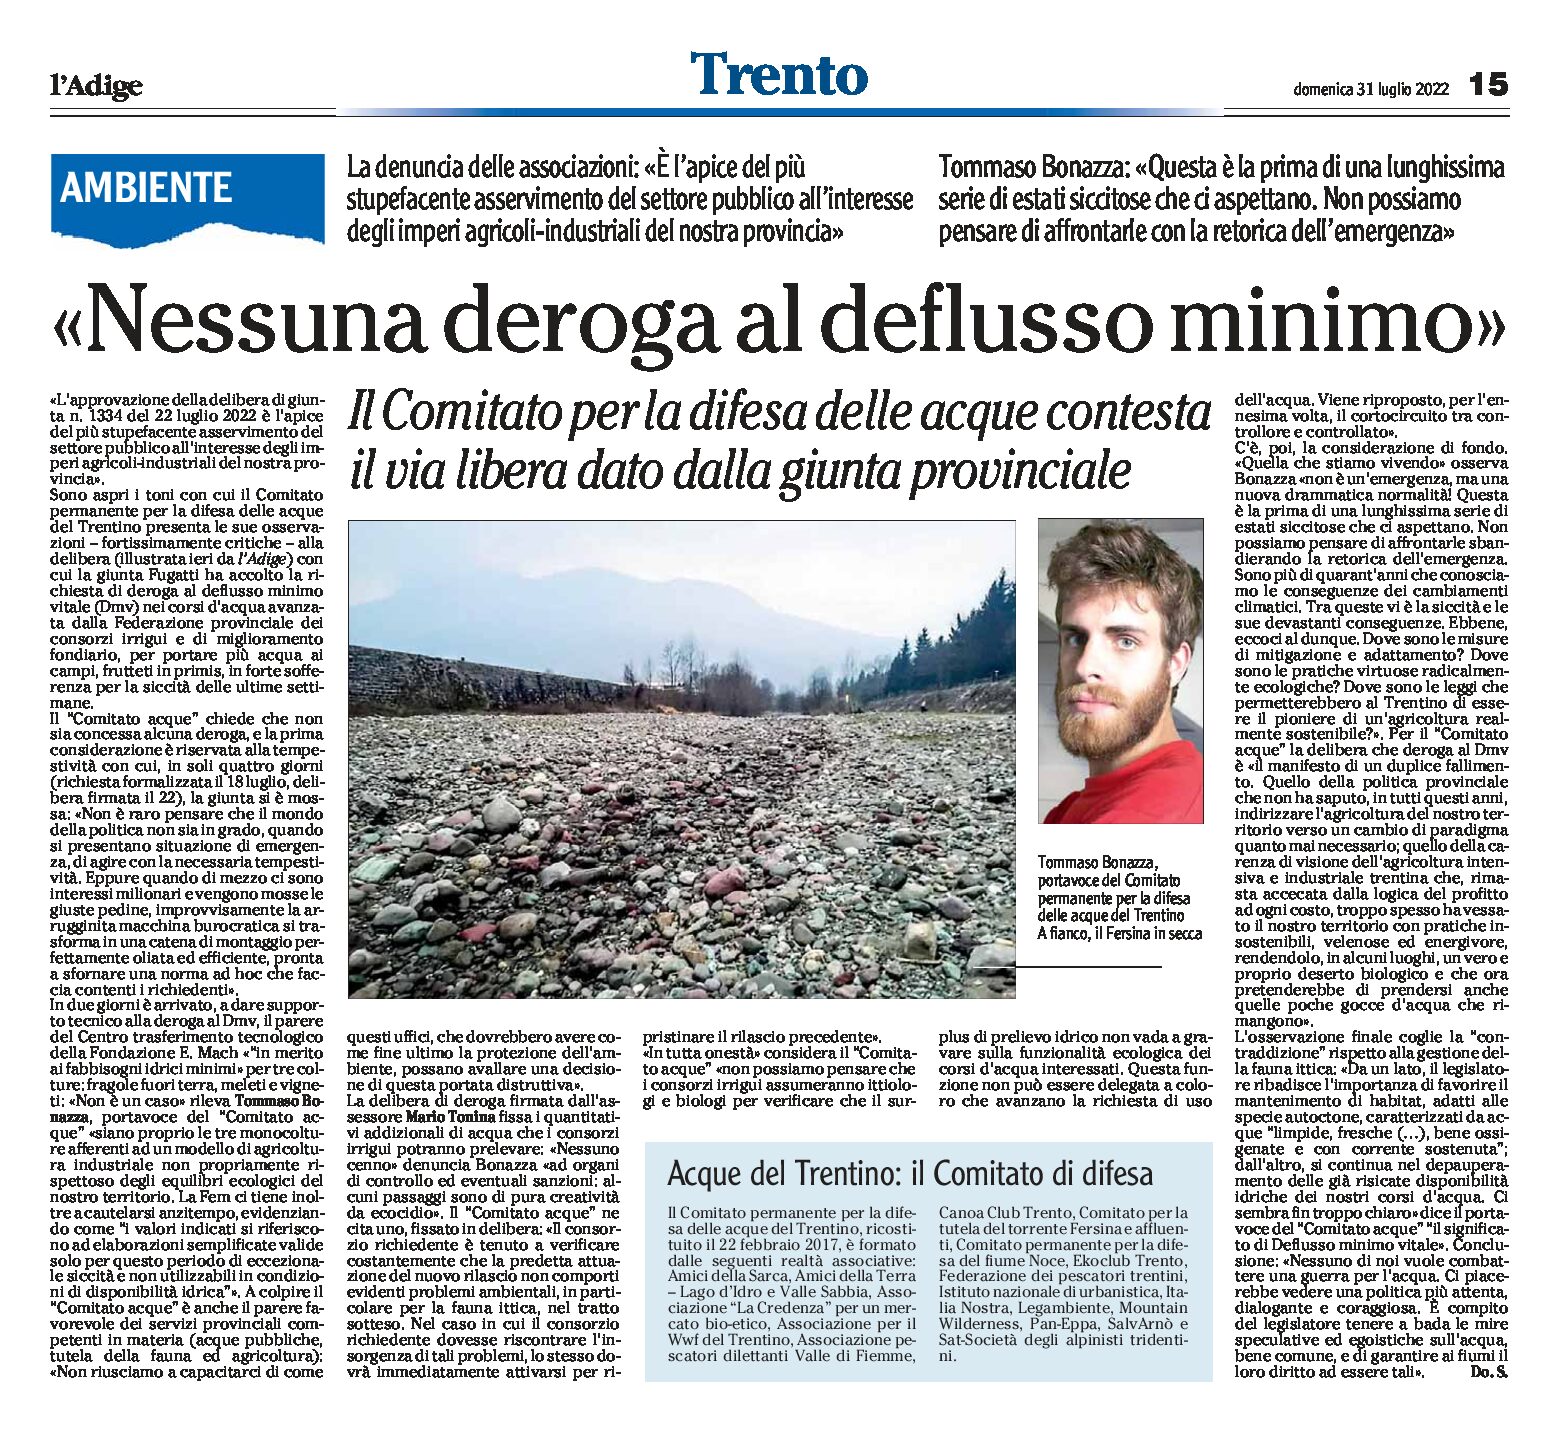 Ambiente: il Comitato acque Trentino “nessuna deroga al deflusso minimo”